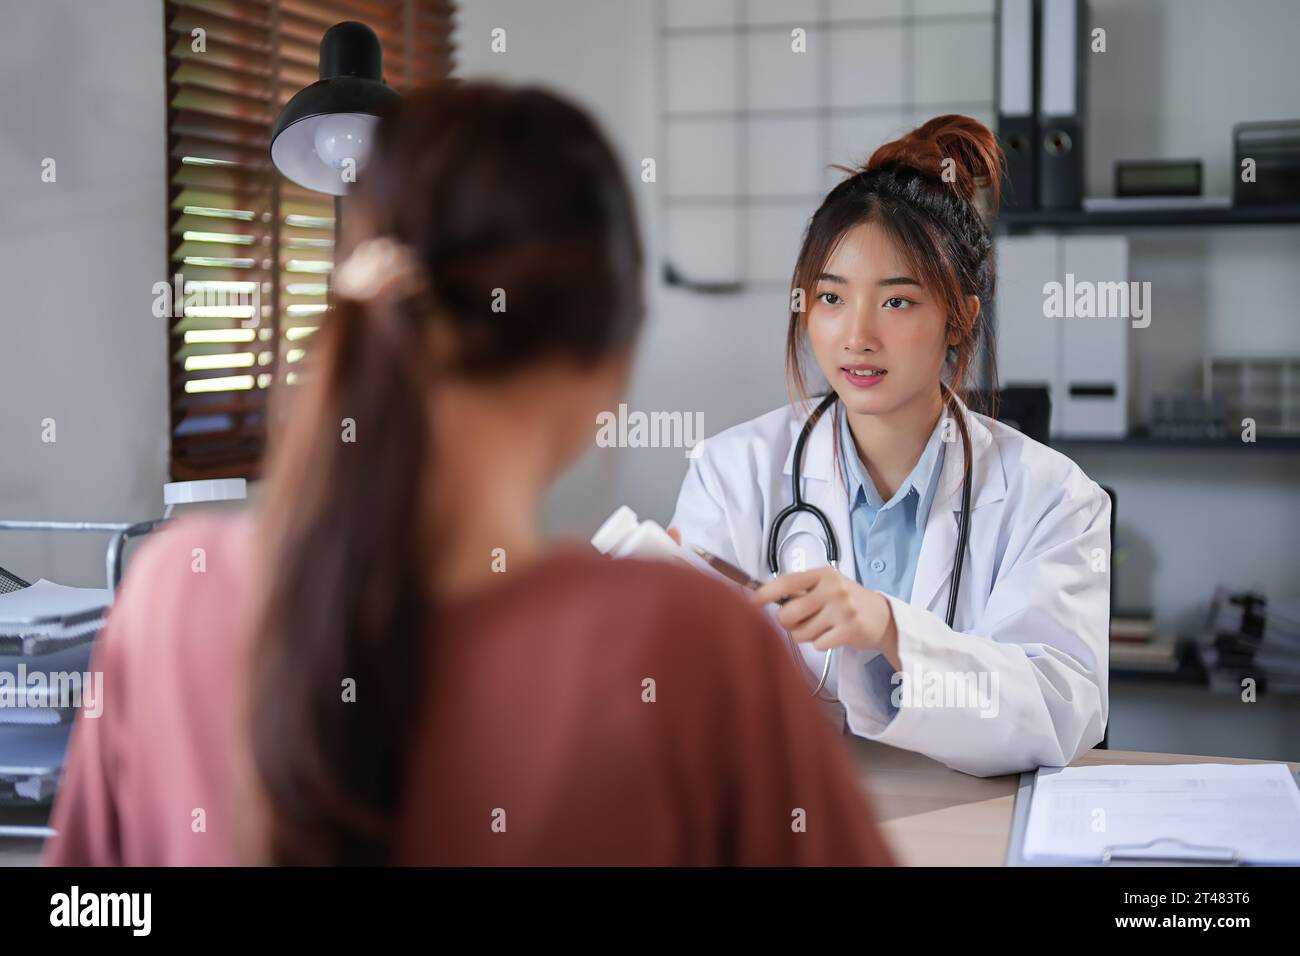 Femmes psychologue asiatique montrant la bouteille de pilules pour expliquer la médecine et la prescription au patient féminin tout en donnant des conseils pour expliquer à propos de moi Banque D'Images